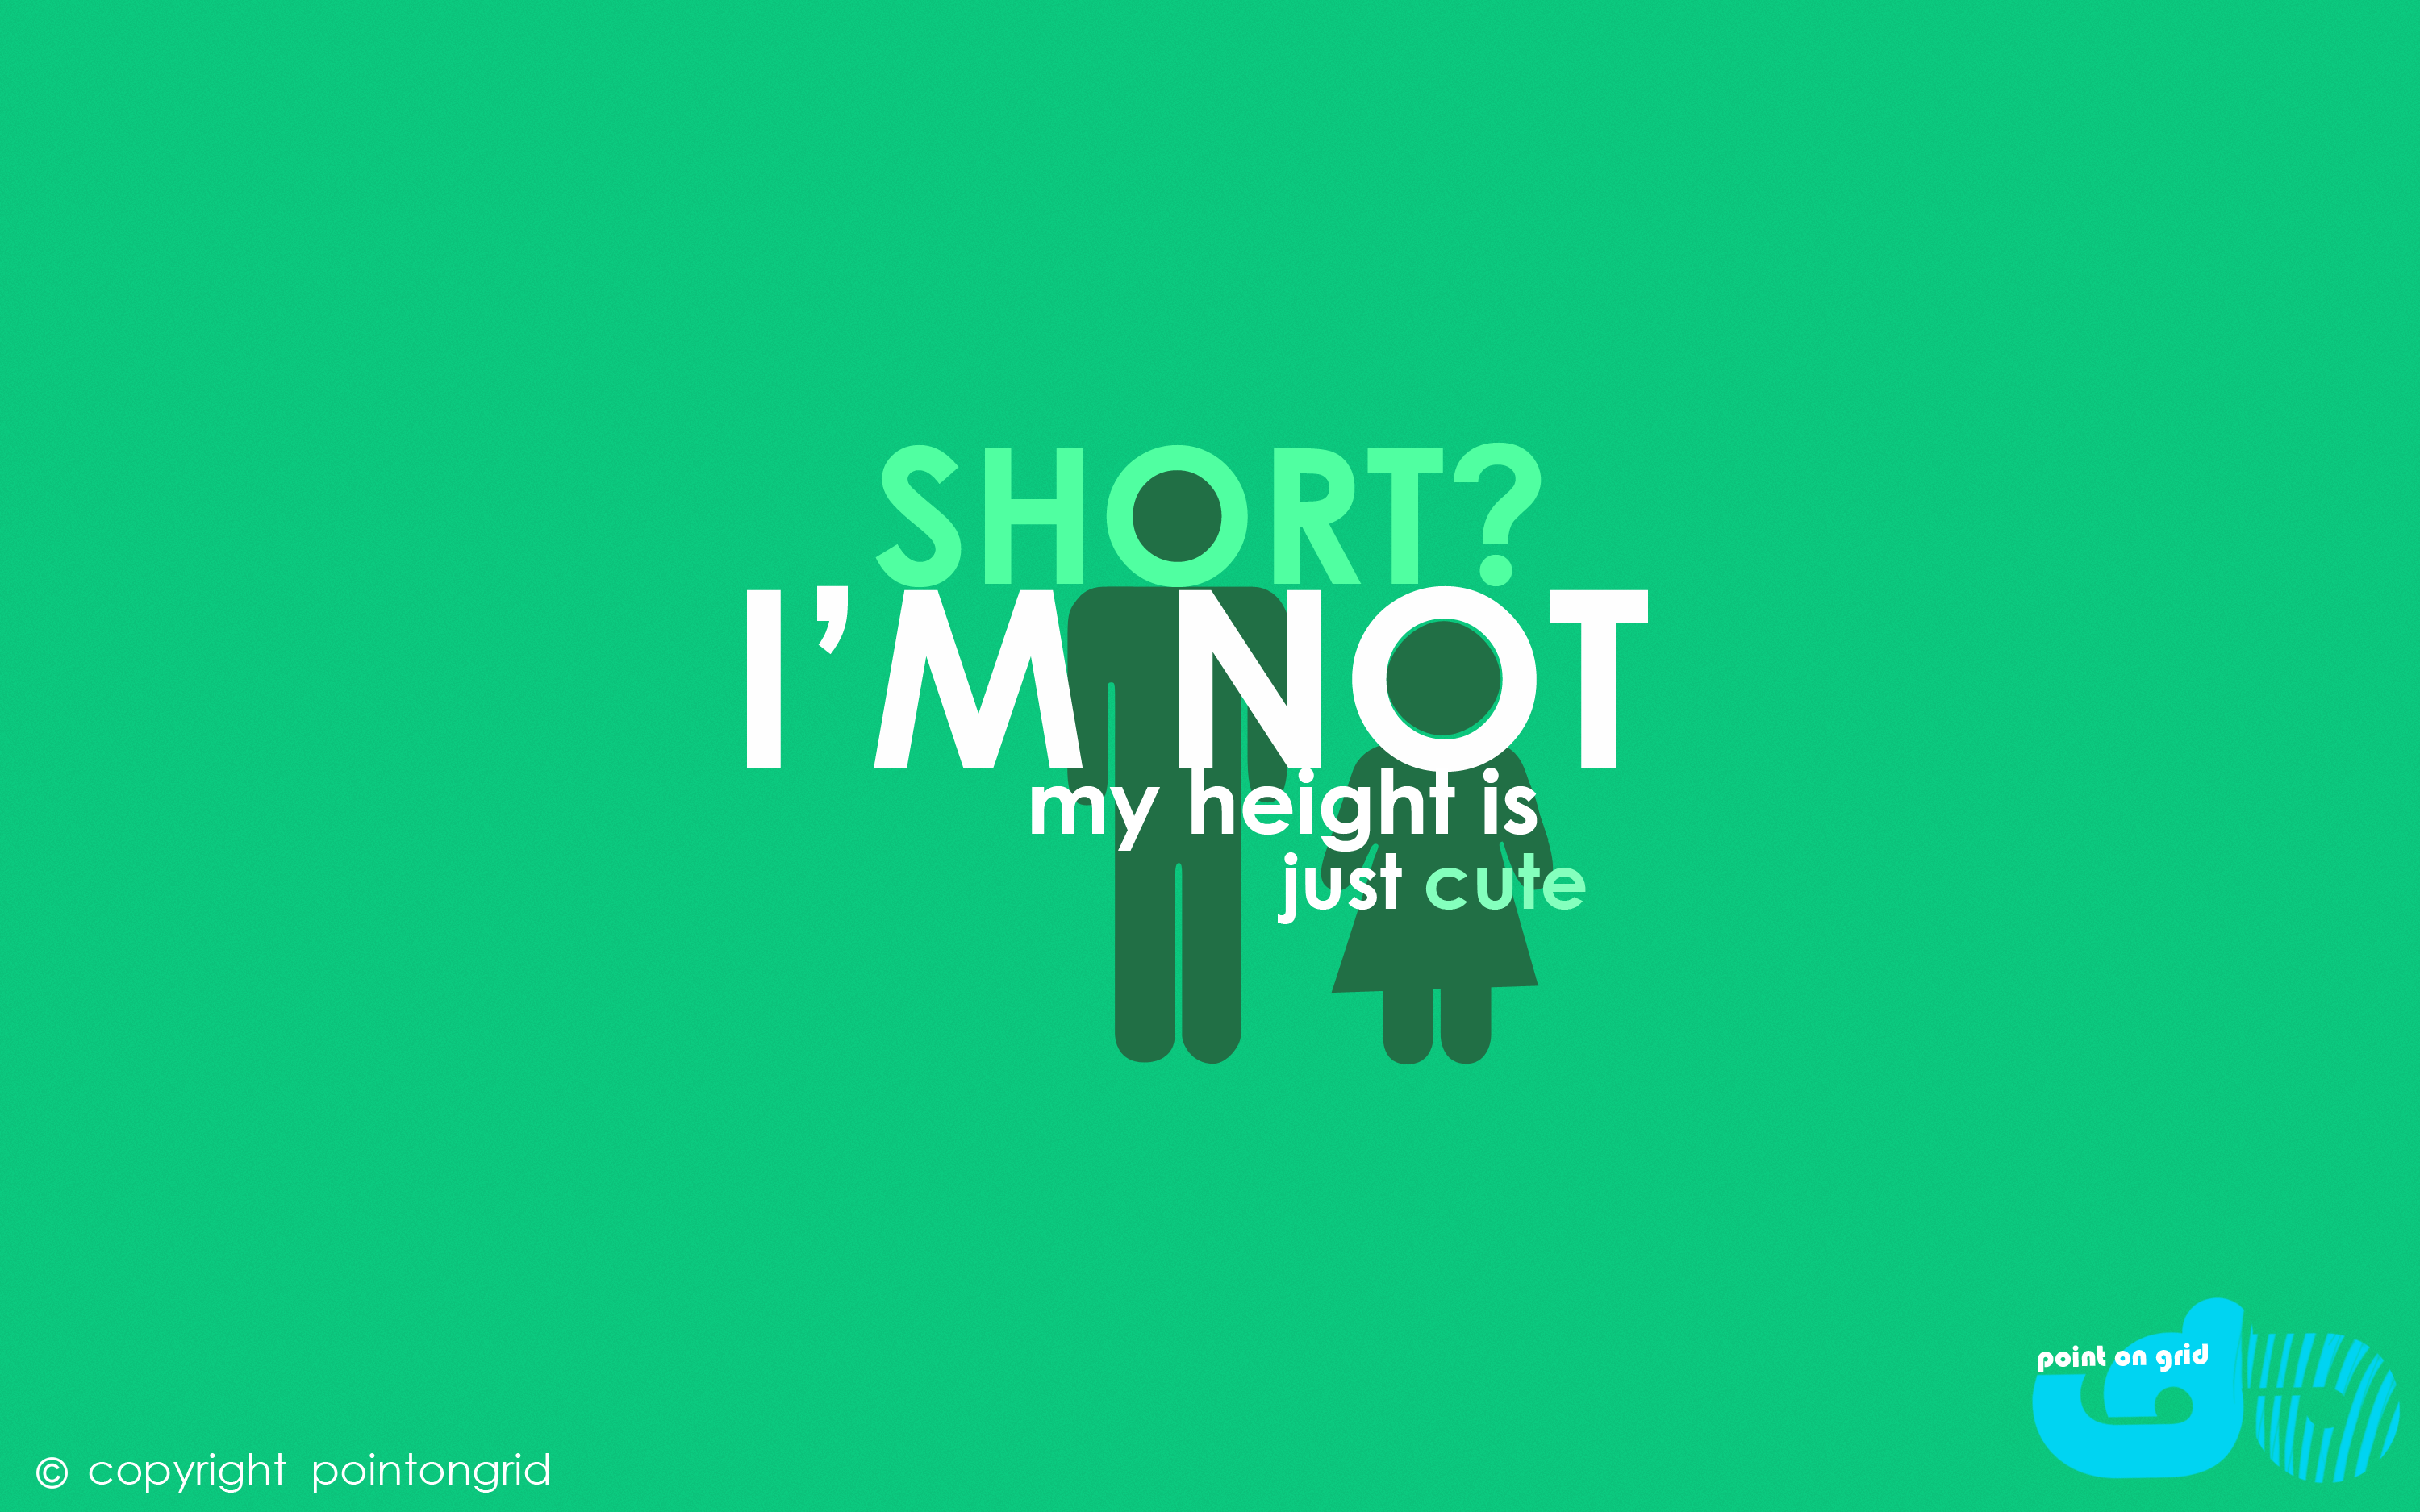 im not short, just CUTE (girl)